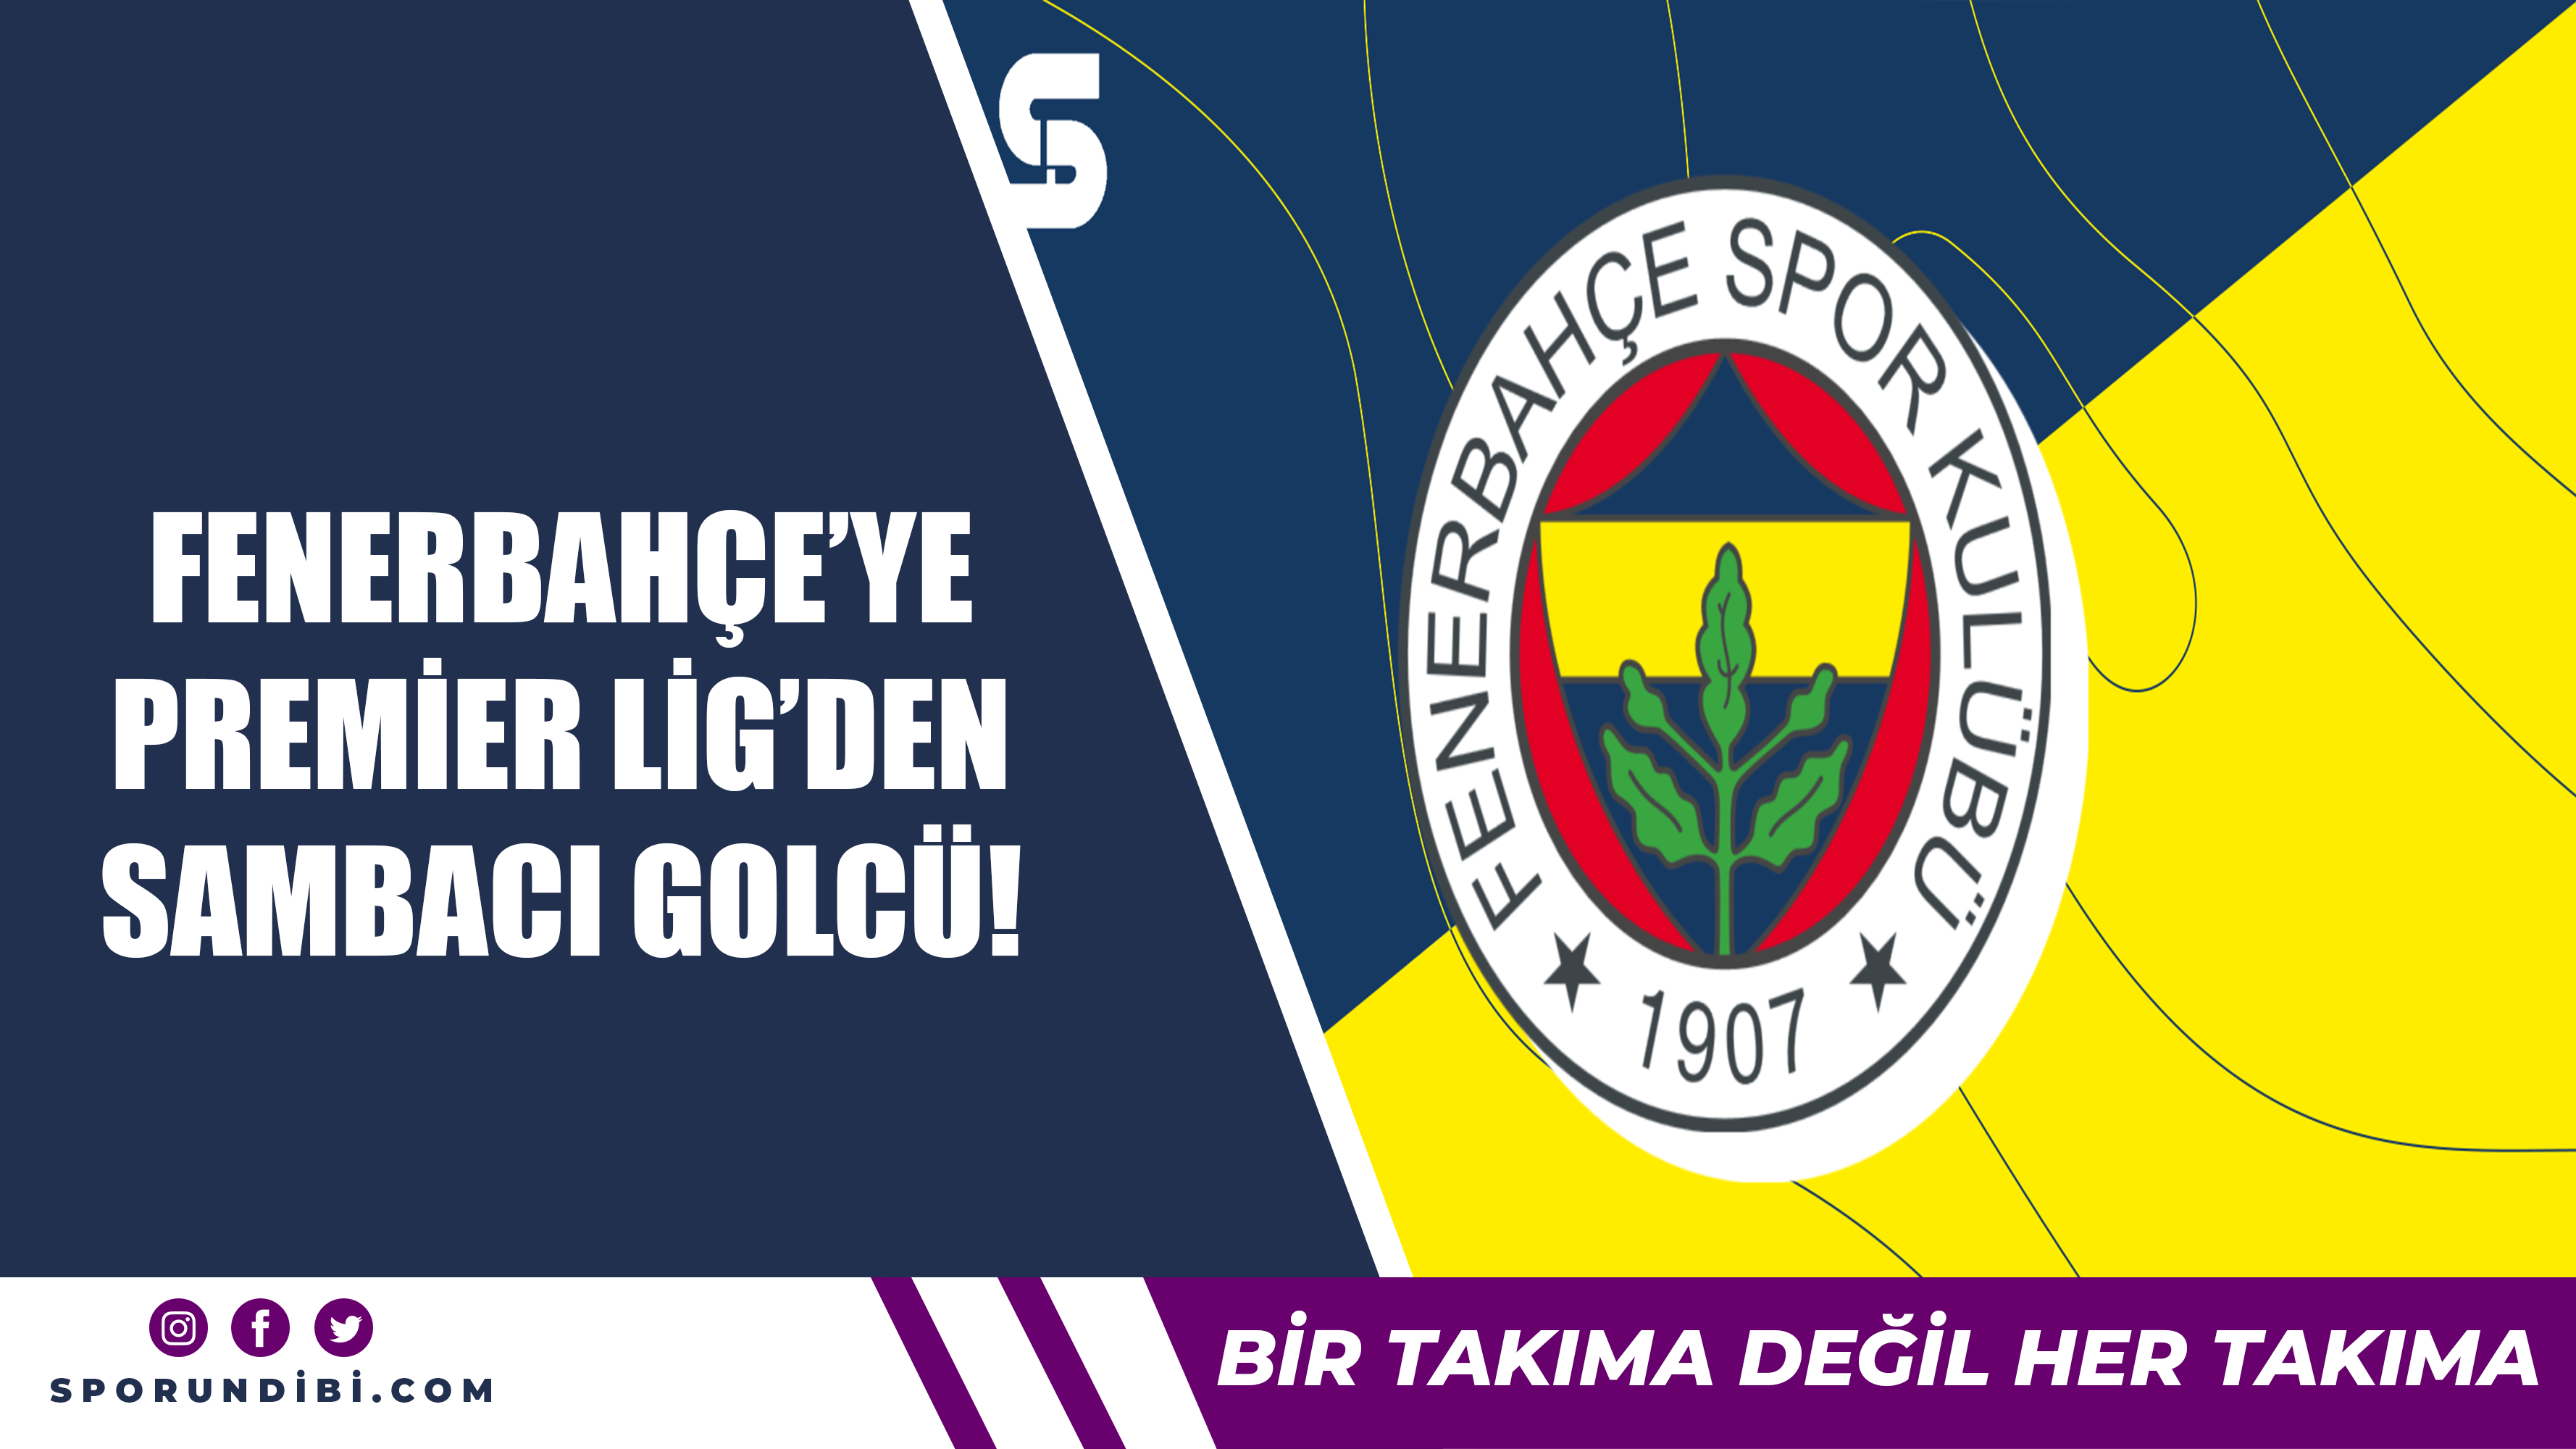 Fenerbahçe'ye Premier Lig'den sambacı golcü!